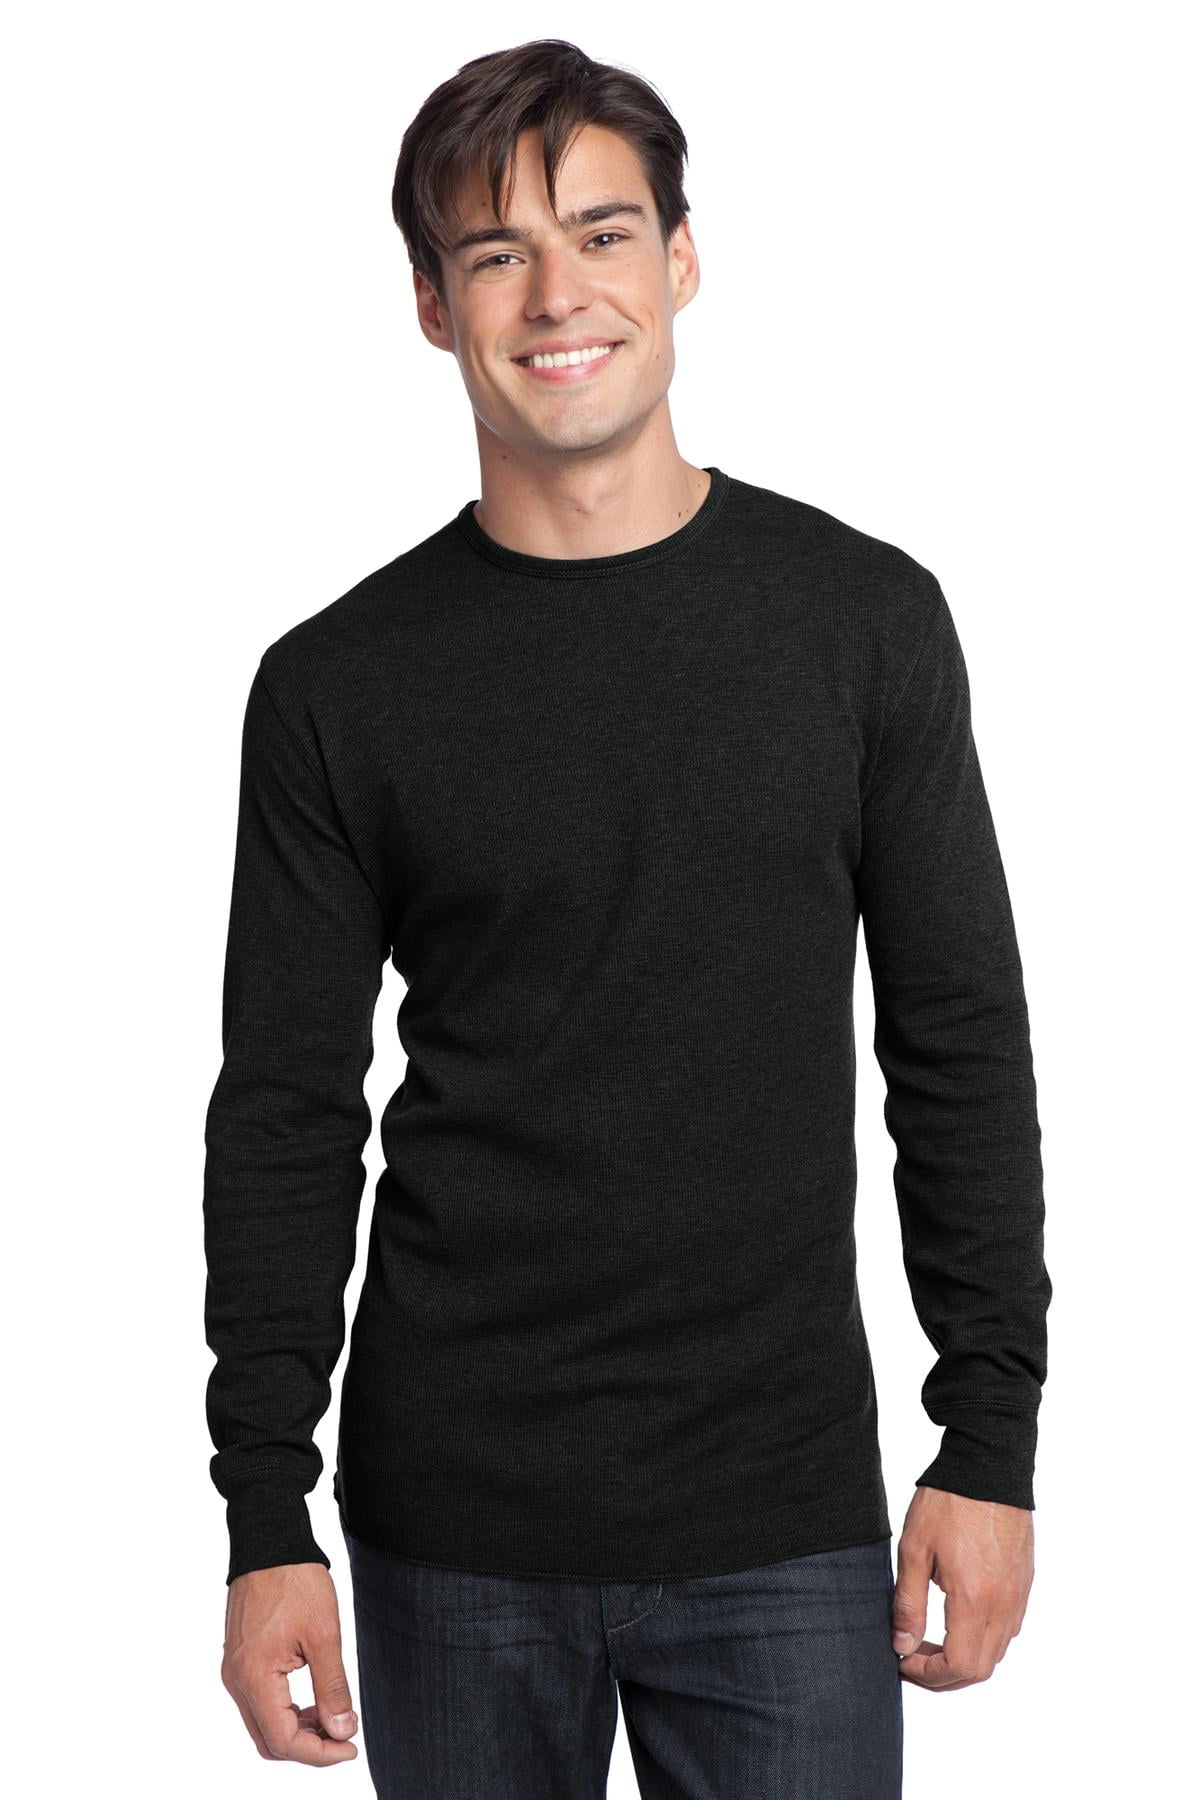 Men long sleeve. Thermal Sleeve. Huge Sleeve Sweater for men. Black short Sleeve Sweater for men.